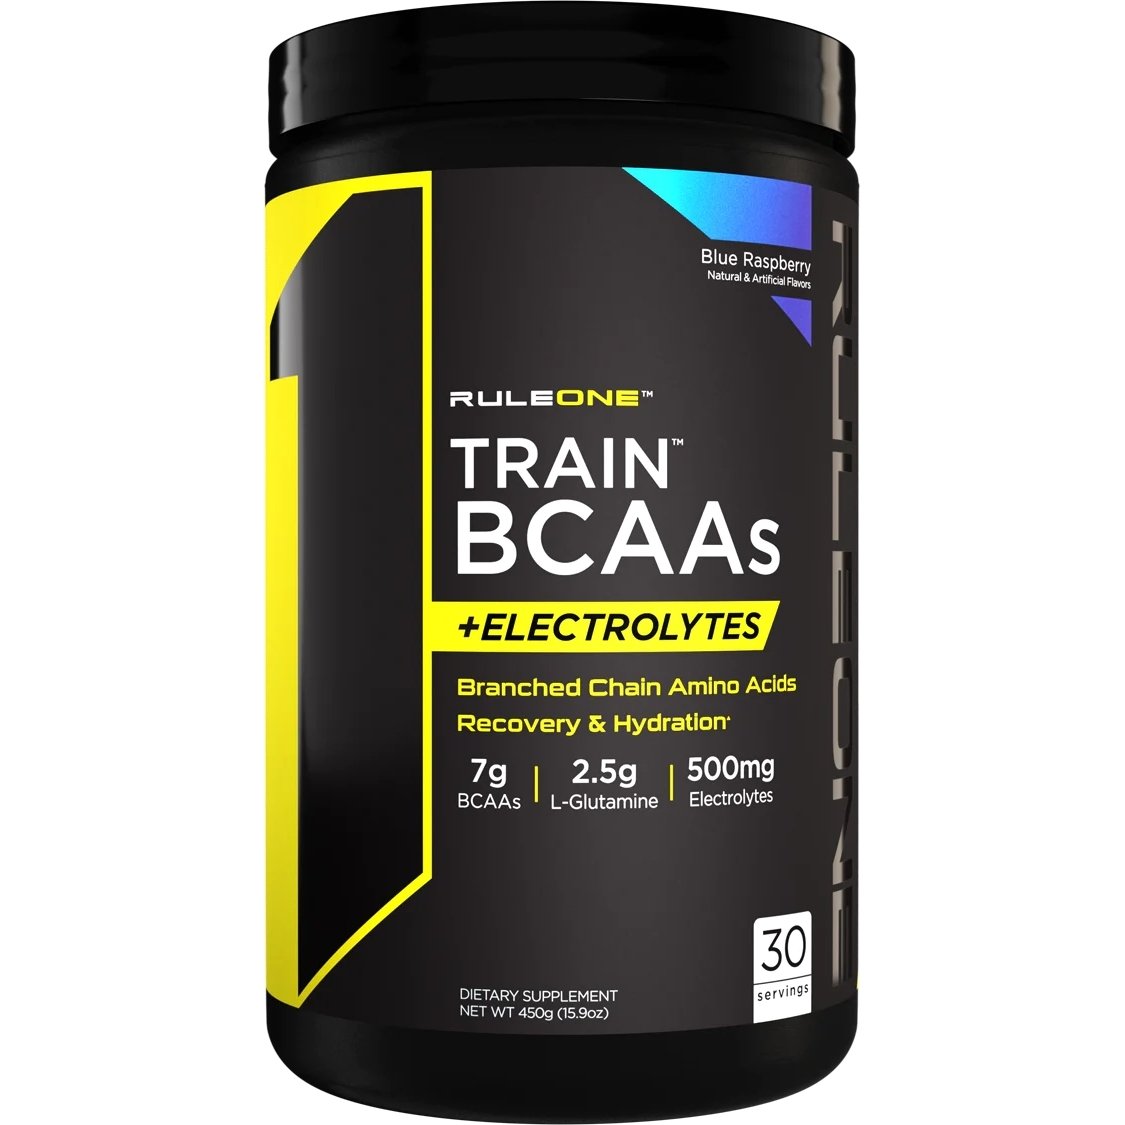 Аминокислота BCAA Rule 1 Train BCAAs + Electrolytes, 450 грамм Ежевика,  ml, Rule One Proteins. BCAA. Weight Loss स्वास्थ्य लाभ Anti-catabolic properties Lean muscle mass 